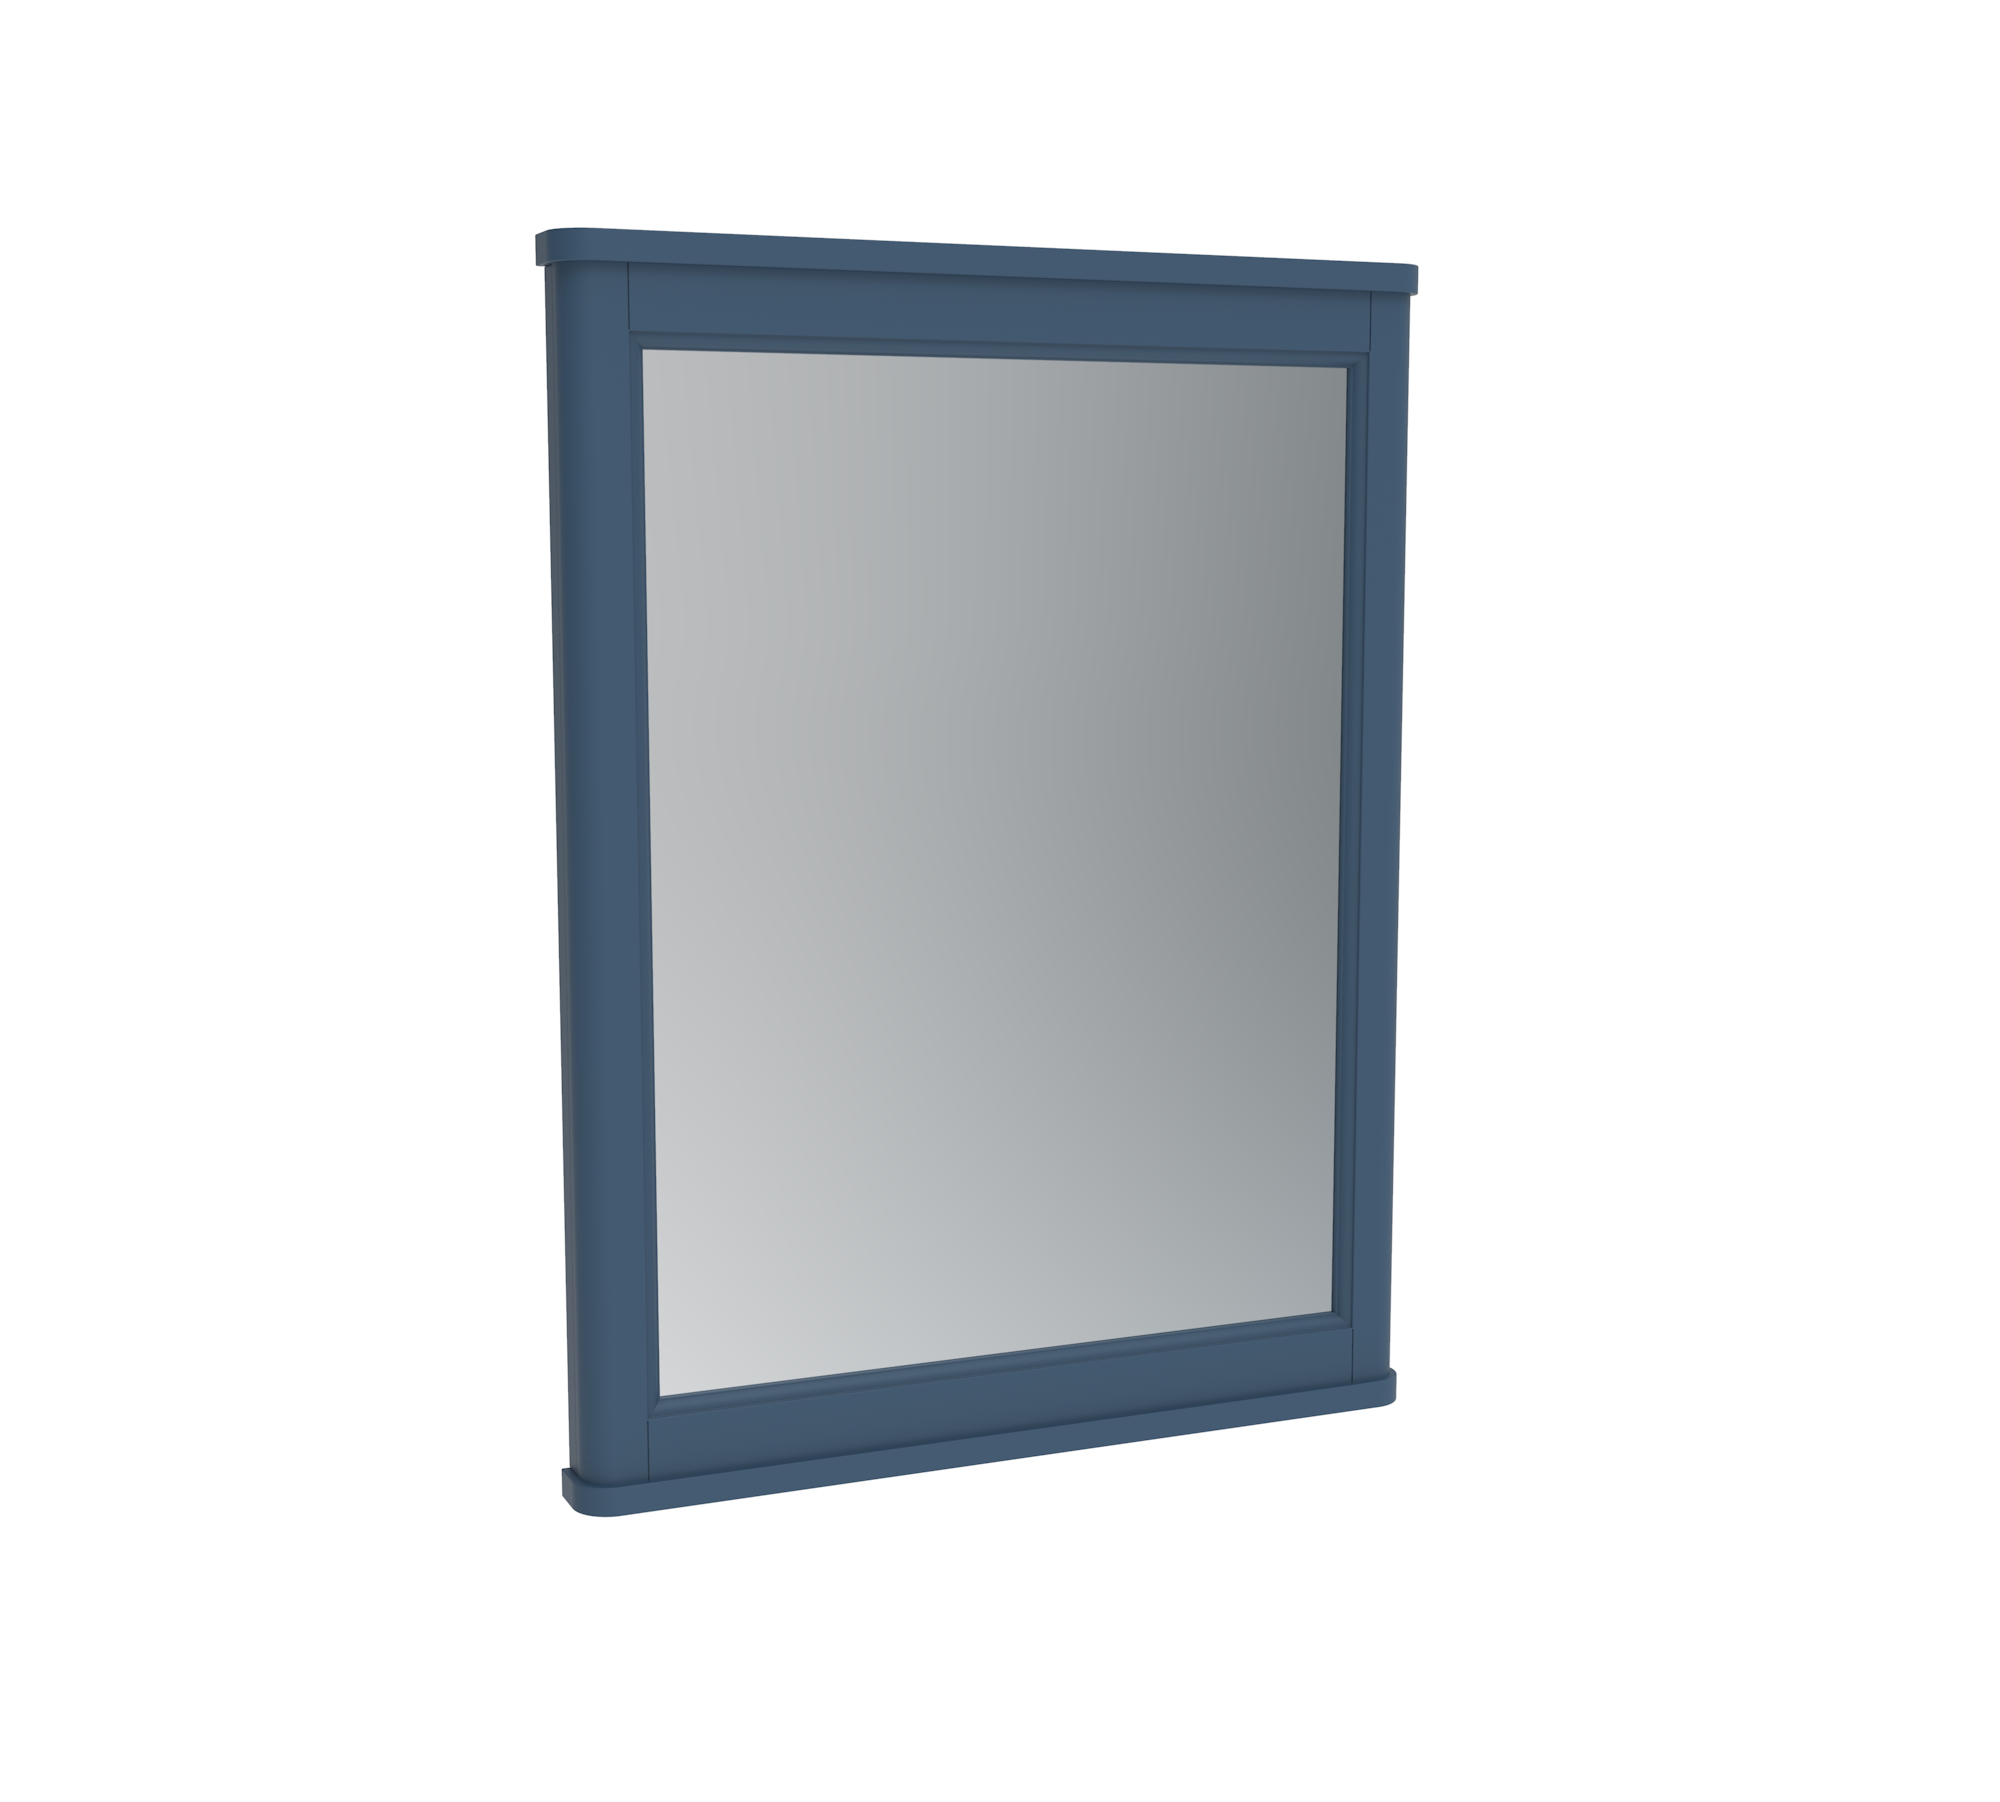 SOFIA 60cm framed mirror - Prussian Blue